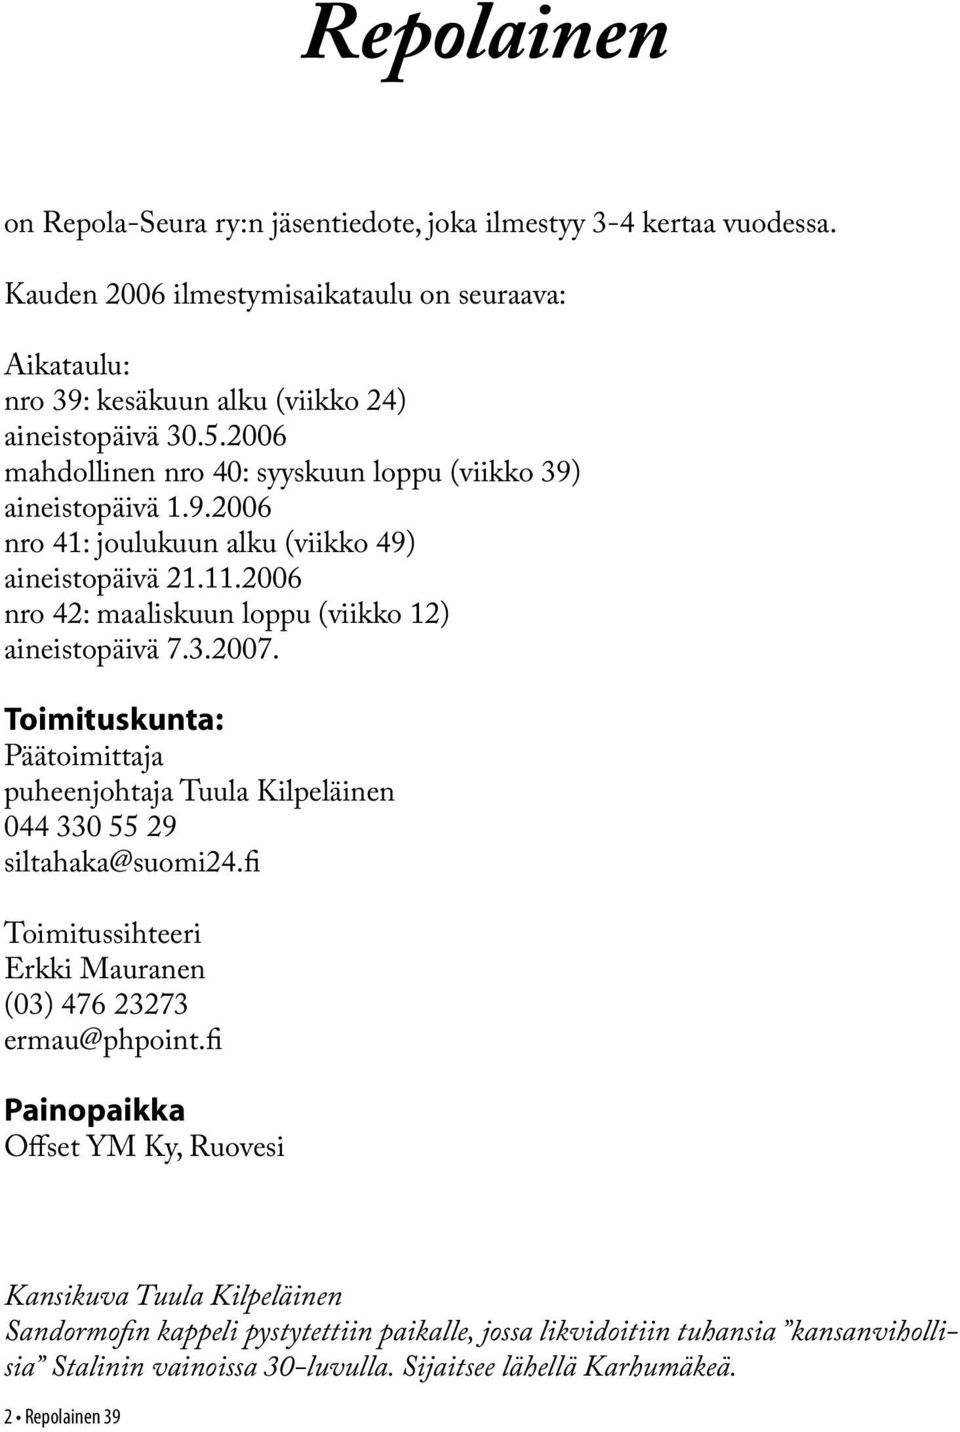 Toimituskunta: Päätoimittaja puheenjohtaja Tuula Kilpeläinen 044 330 55 29 siltahaka@suomi24.fi Toimitussihteeri Erkki Mauranen (03) 476 23273 ermau@phpoint.